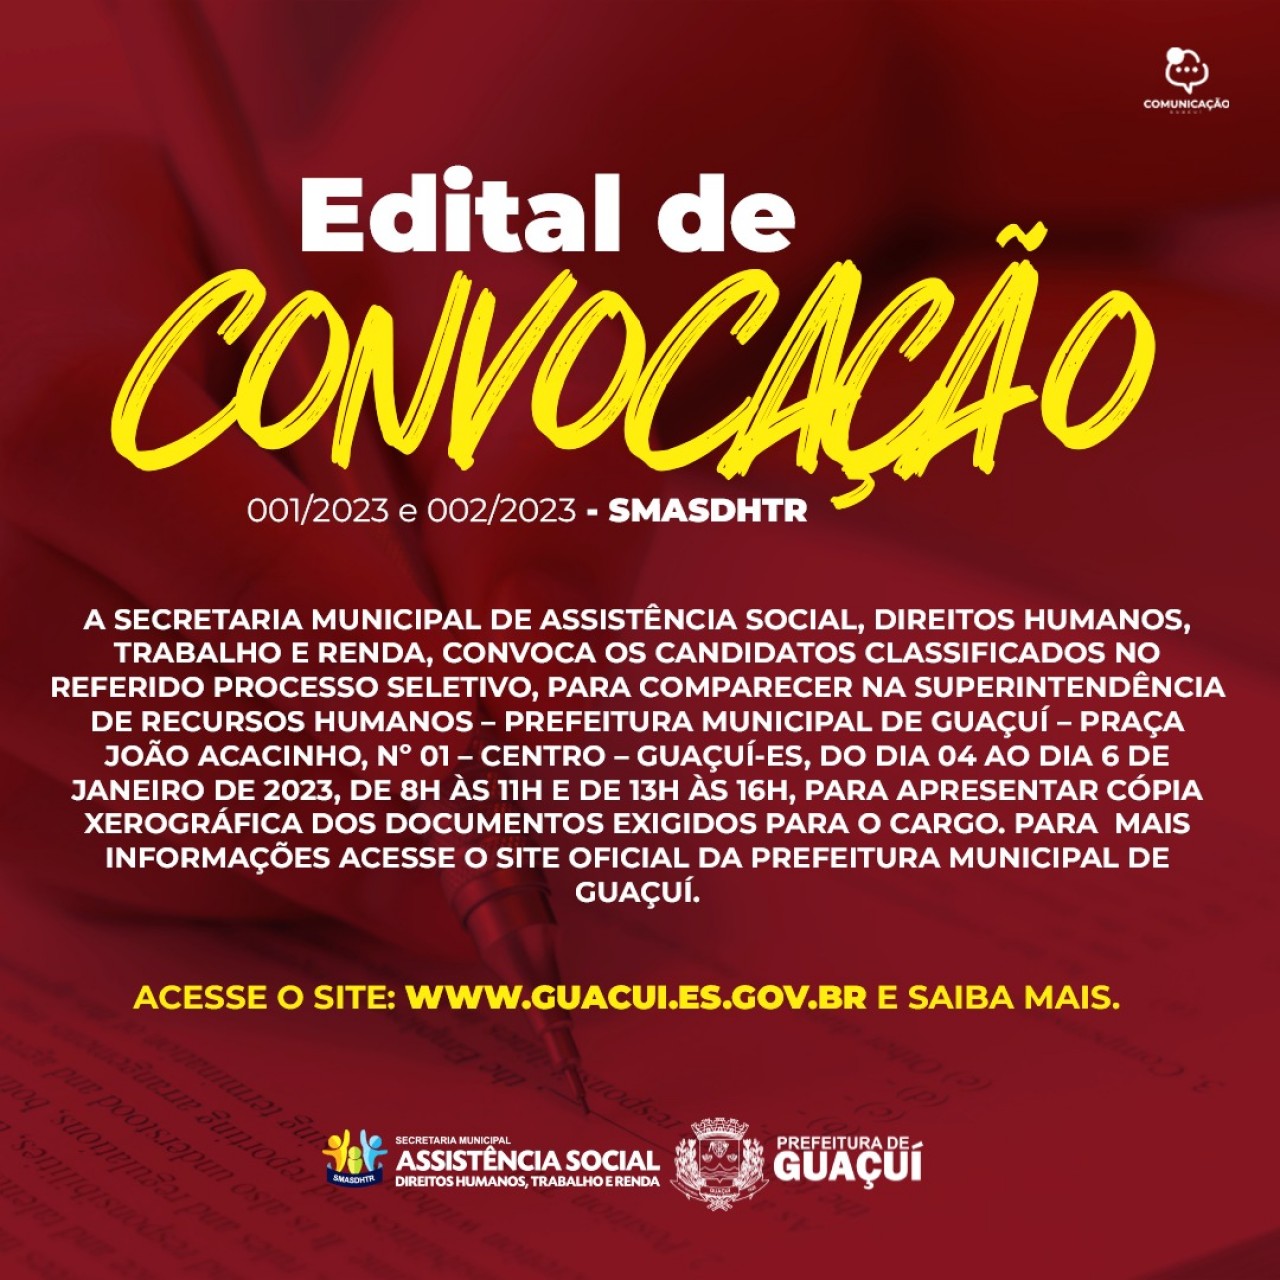 ASSISTÊNCIA SOCIAL PUBLICA EDITAL DE CONVOCAÇÃO 001/2023 E 002/2023